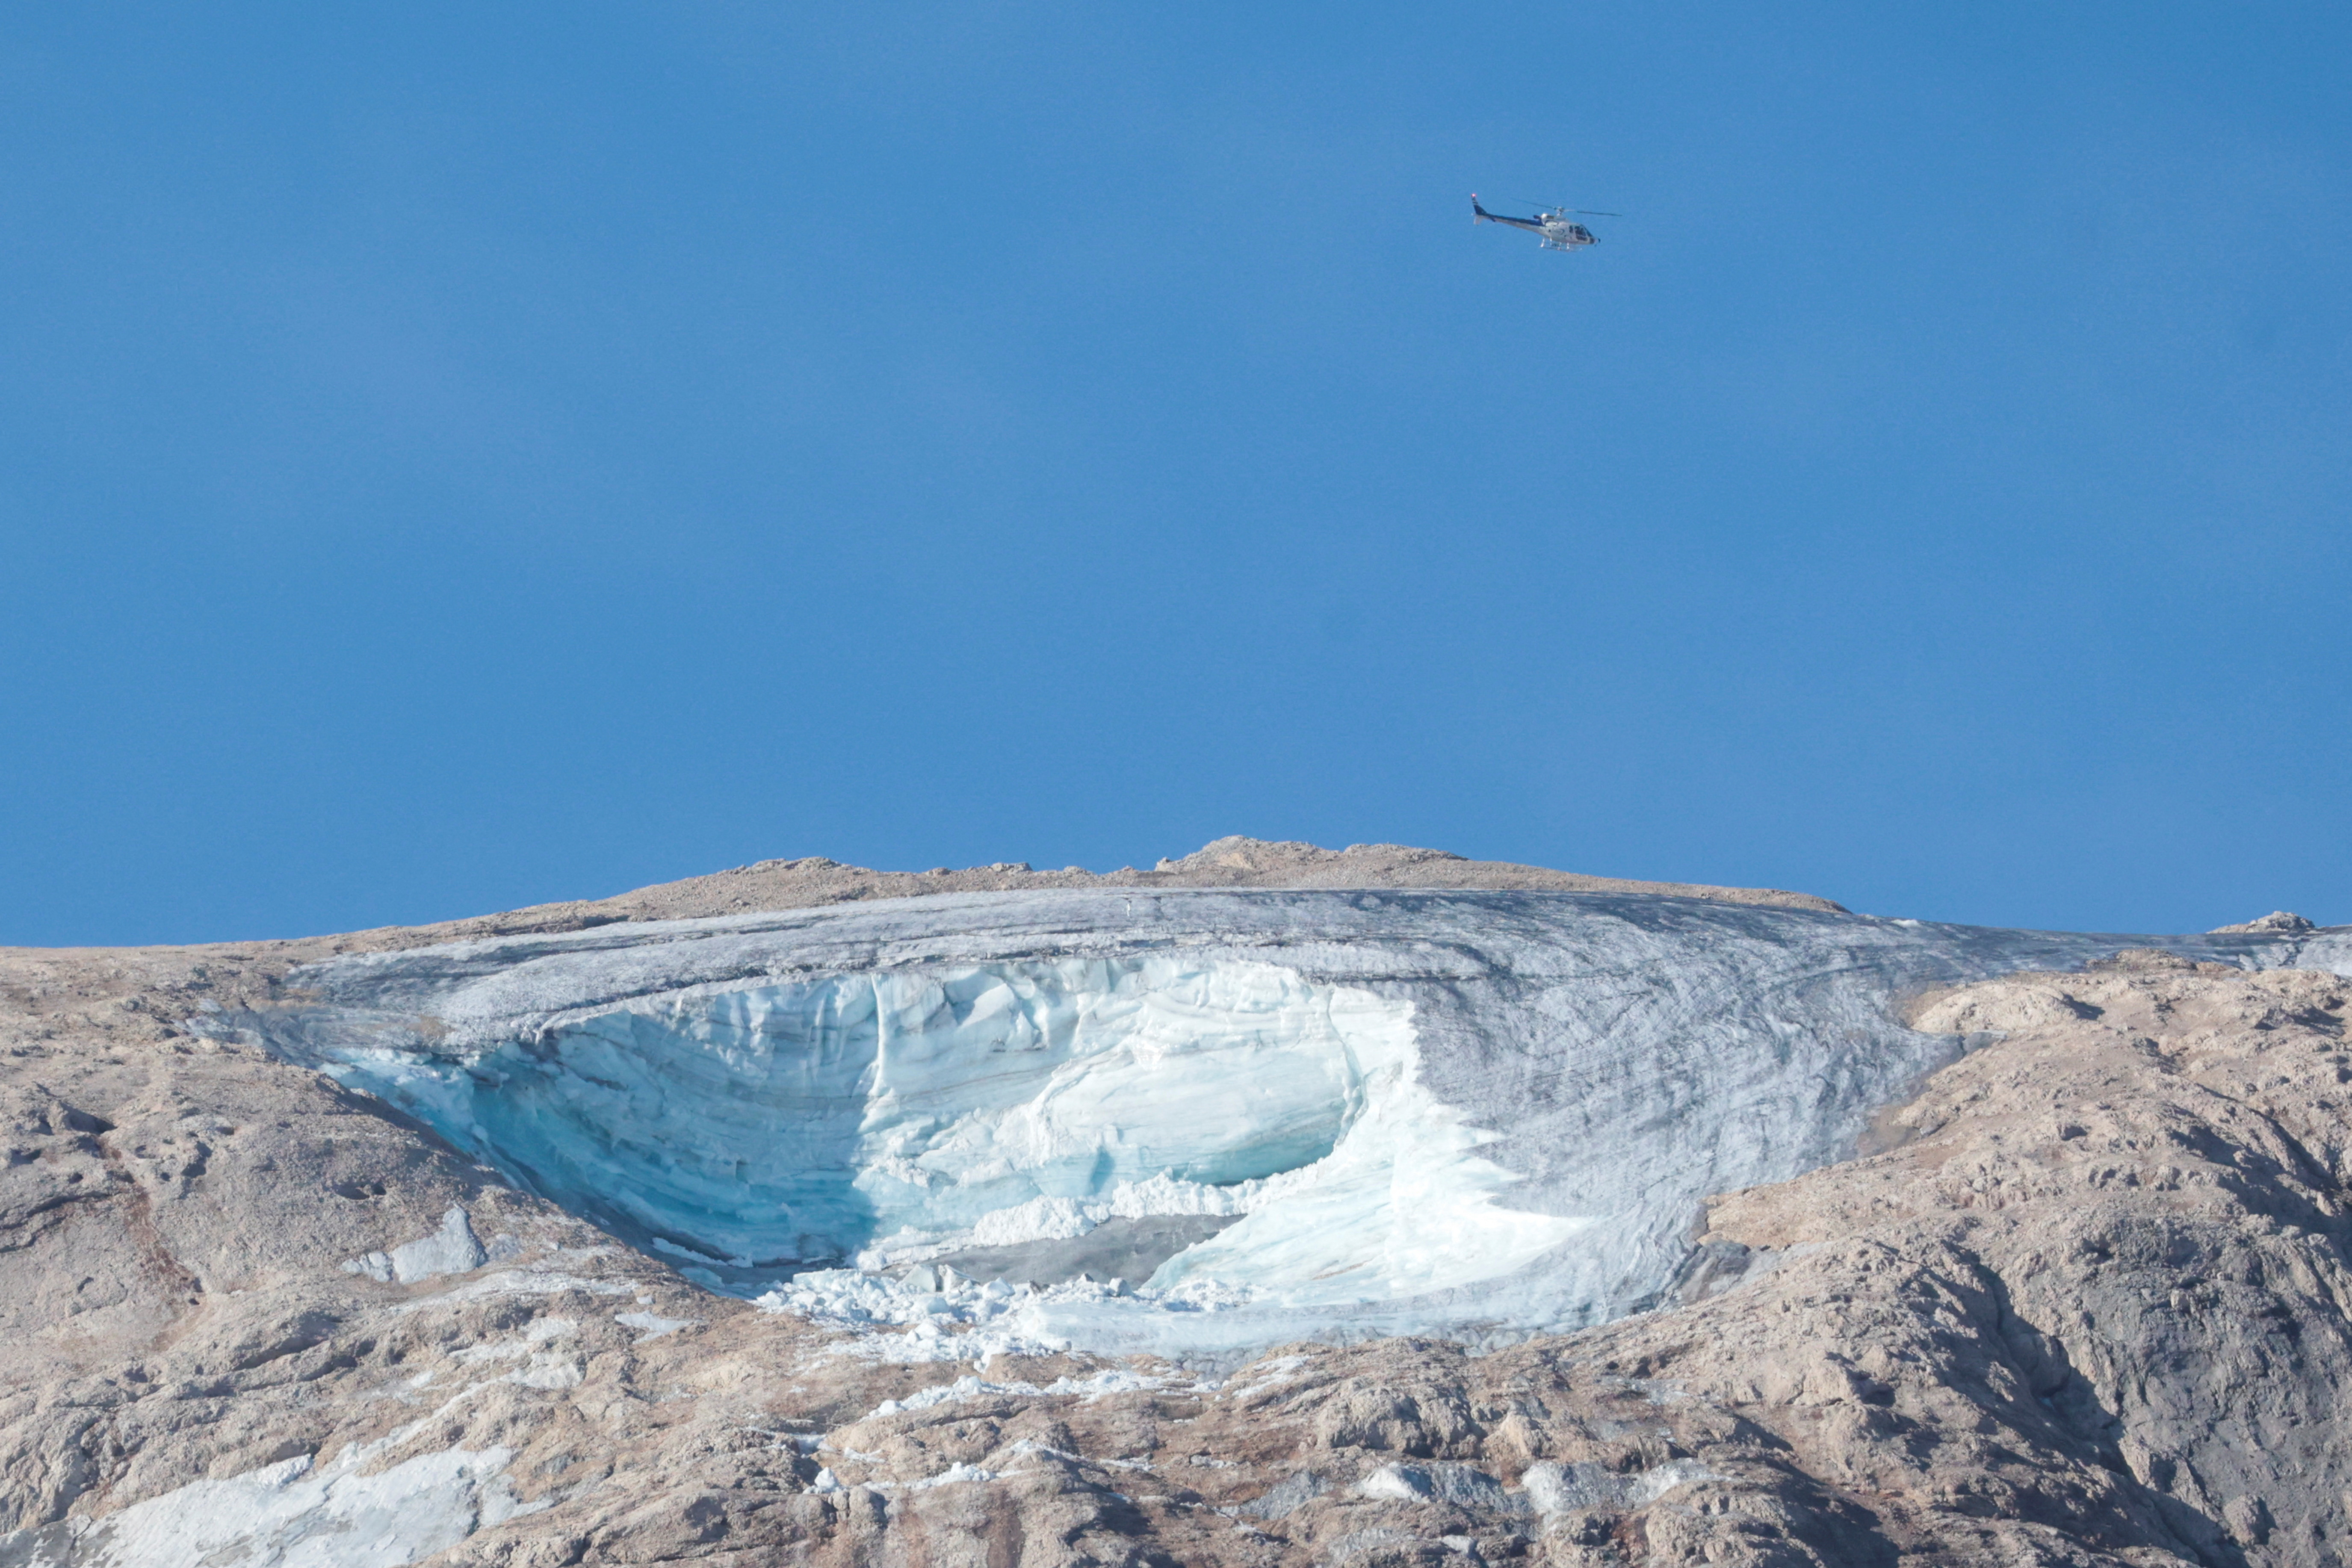 Glacier collapse in the Italian Alps of Marmolada